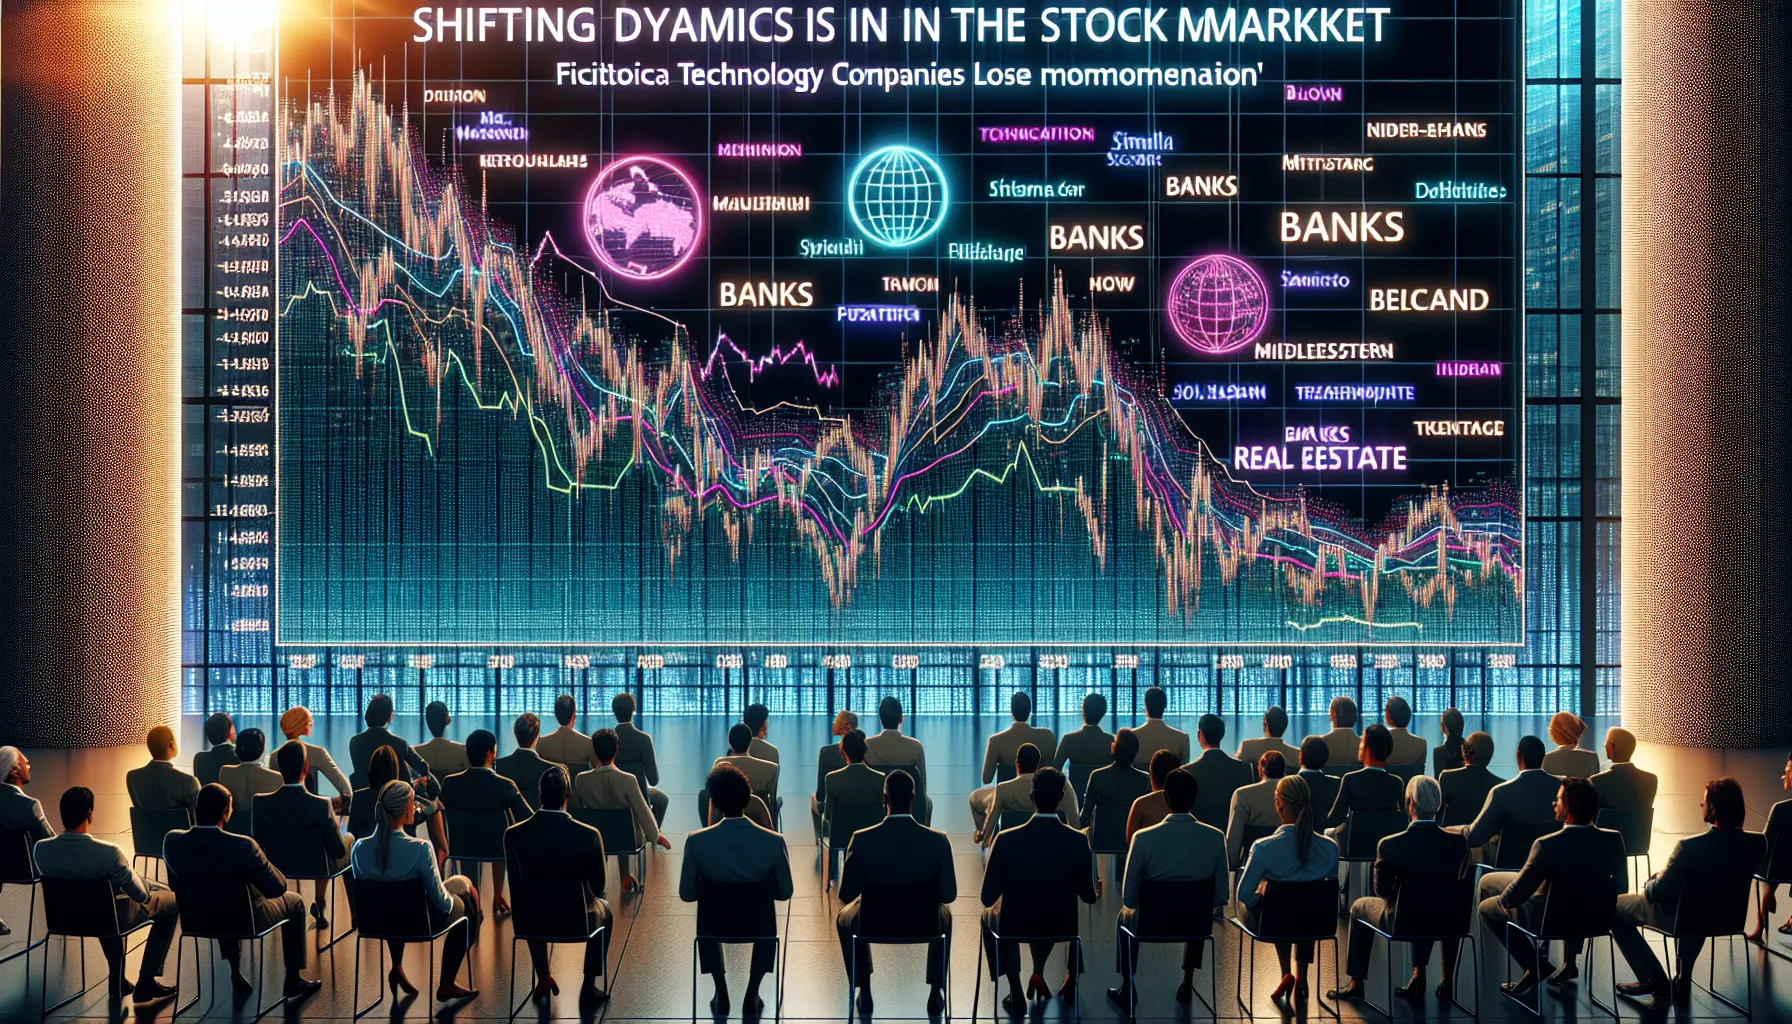 Évolution de la dynamique du marché boursier : les valeurs technologiques perdent de leur élan